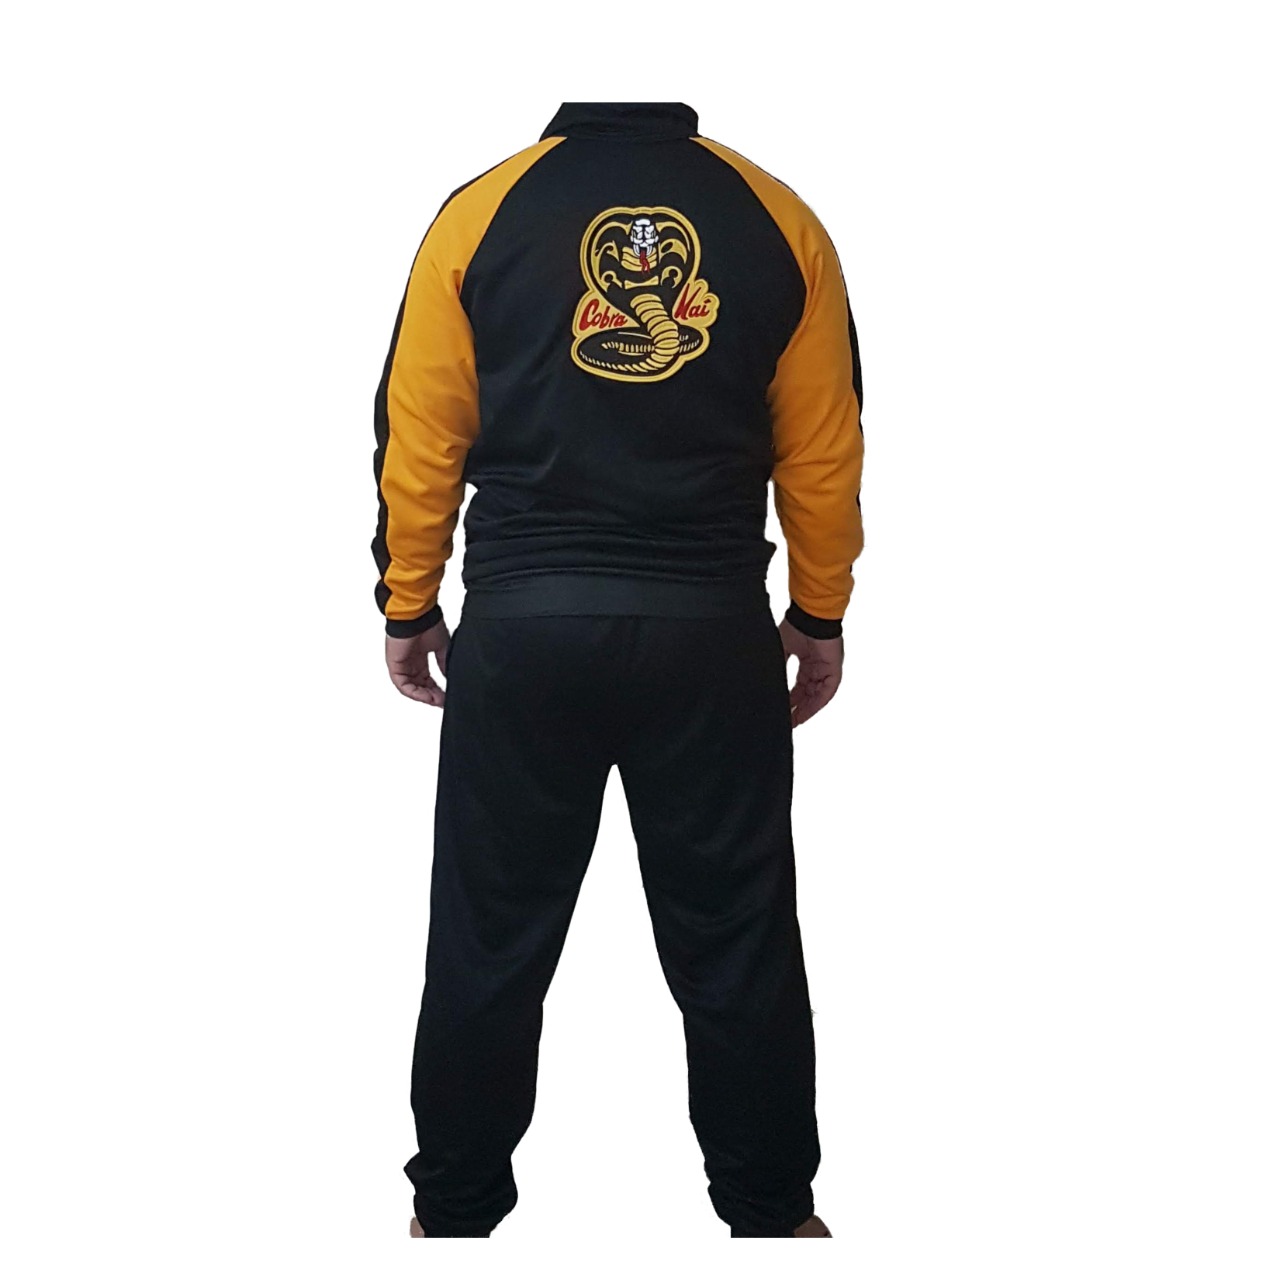 Agasalho Karate Cobra Kai preto com detalhes em amarelo + Brinde